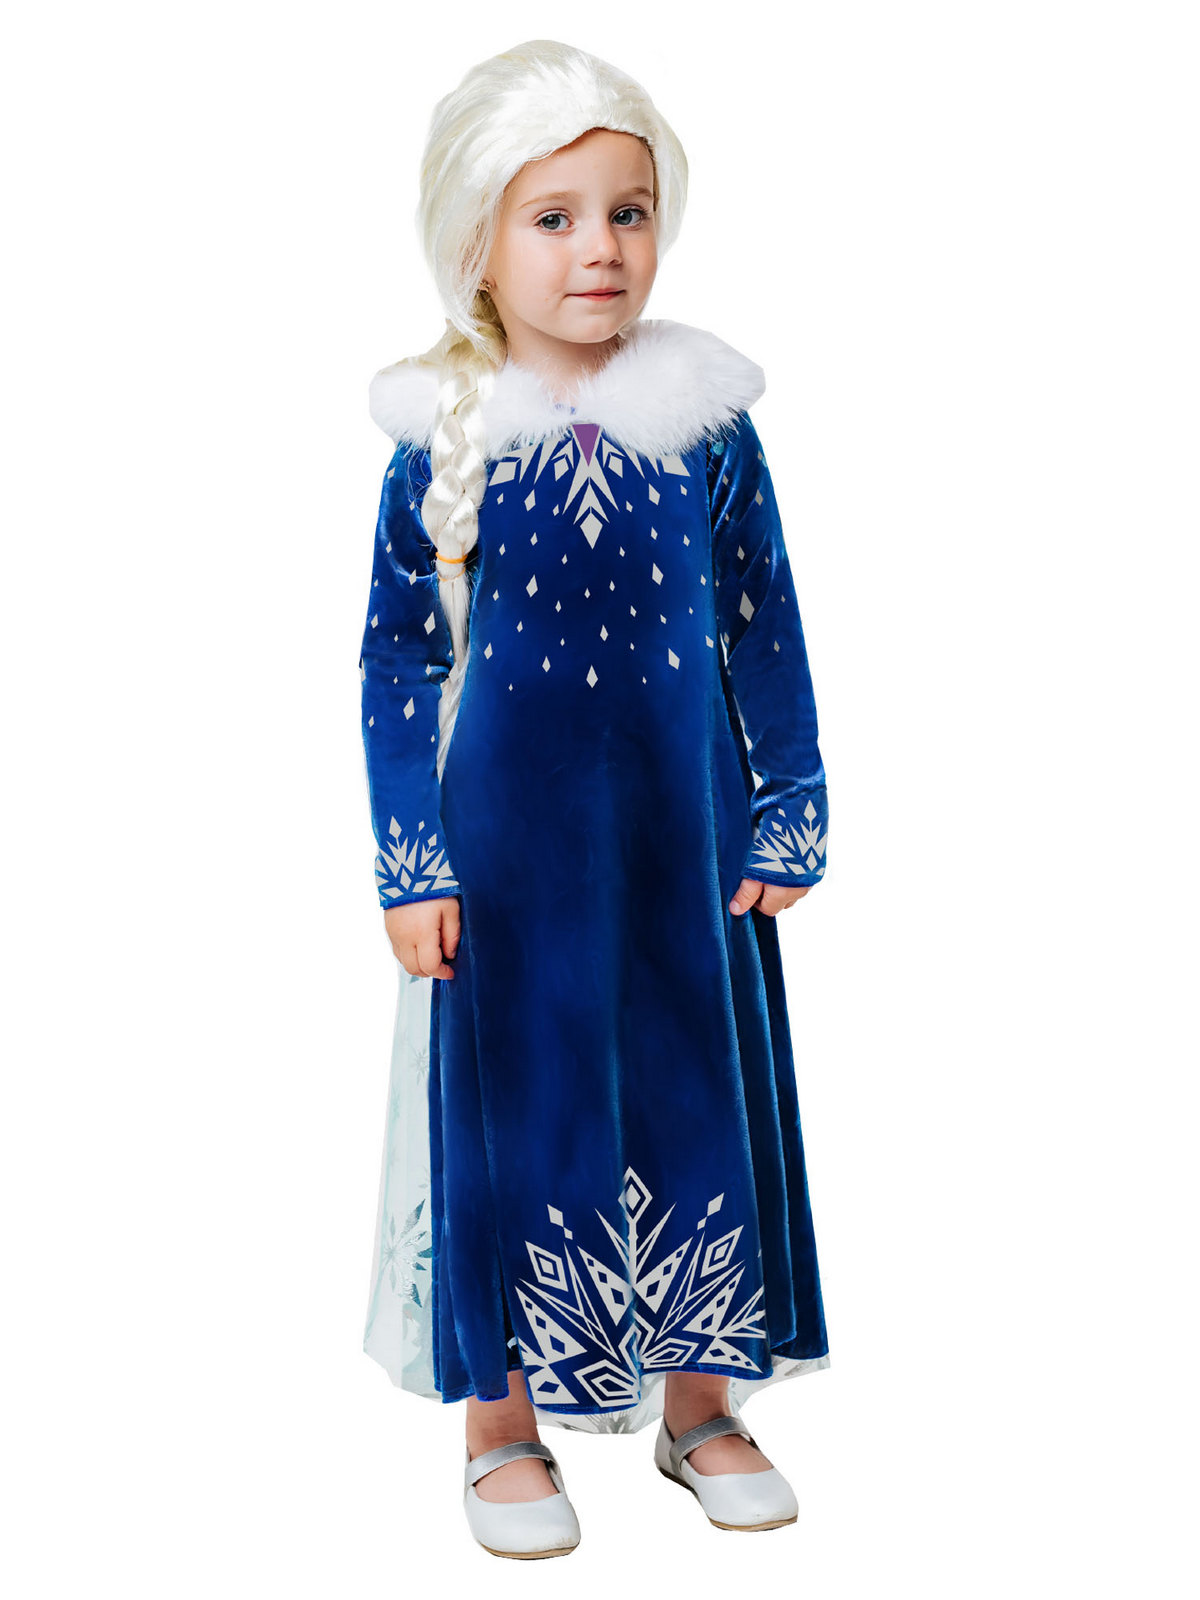 Карнавальный костюм Batik 9004 к-21 Эльза зимнее платье, синий, 116 карнавальный костюм batik 9004 к 21 эльза зимнее платье синий 122